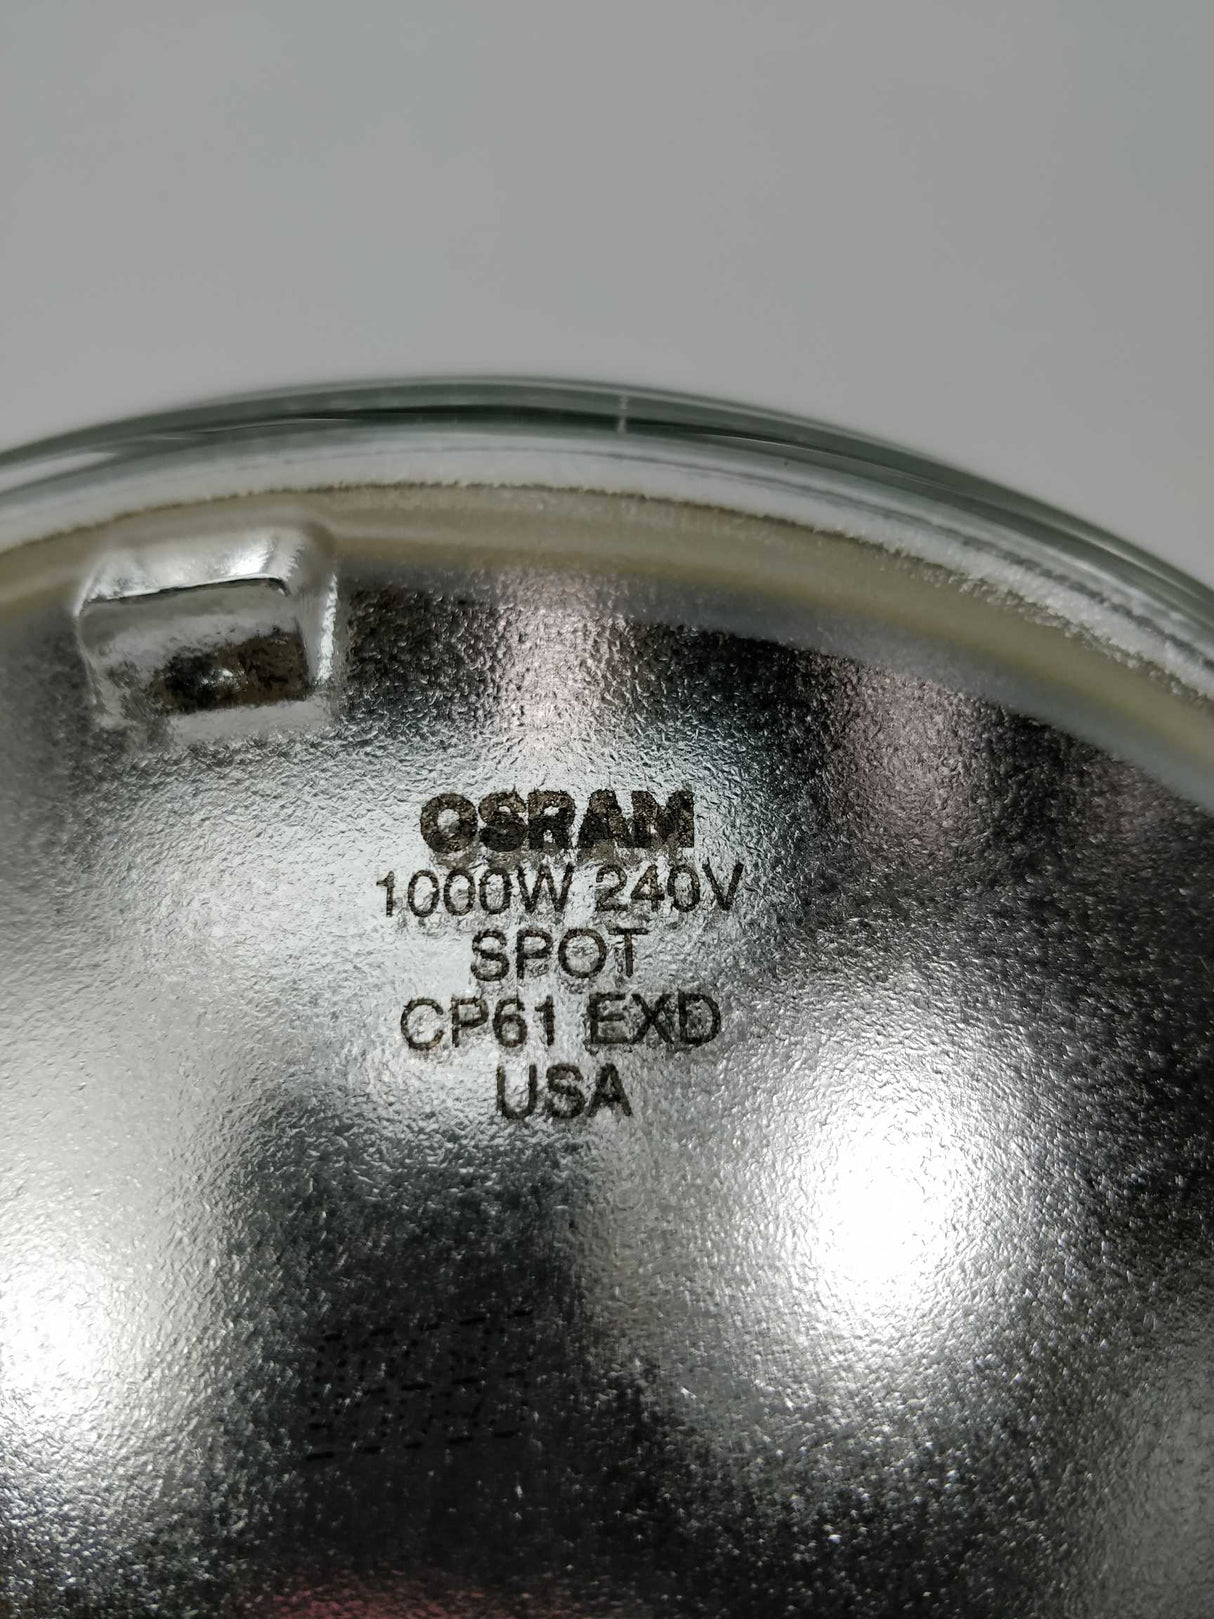 Osram EXD-240 CP/61 Spot 1000W 240V GX16d